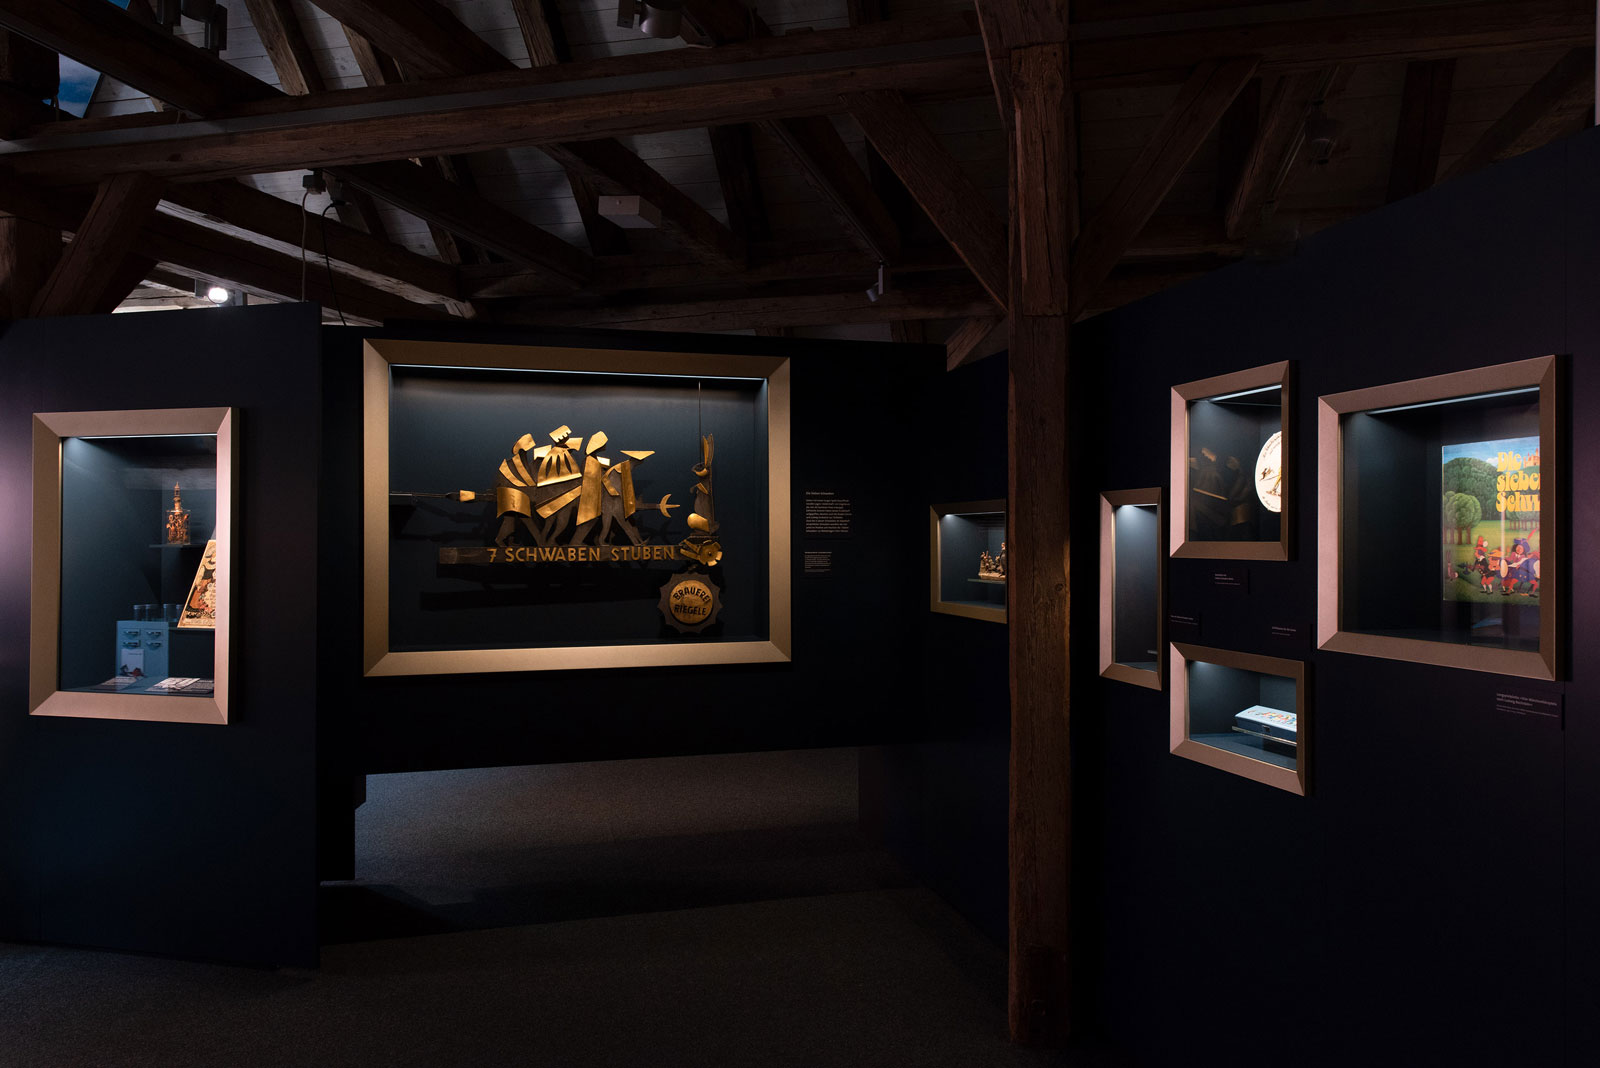 Das Referenzbild für Ausstellungsgestaltung aus der Dauerausstellung Tradition und Umbruch zeigt Einbauvitrinen.